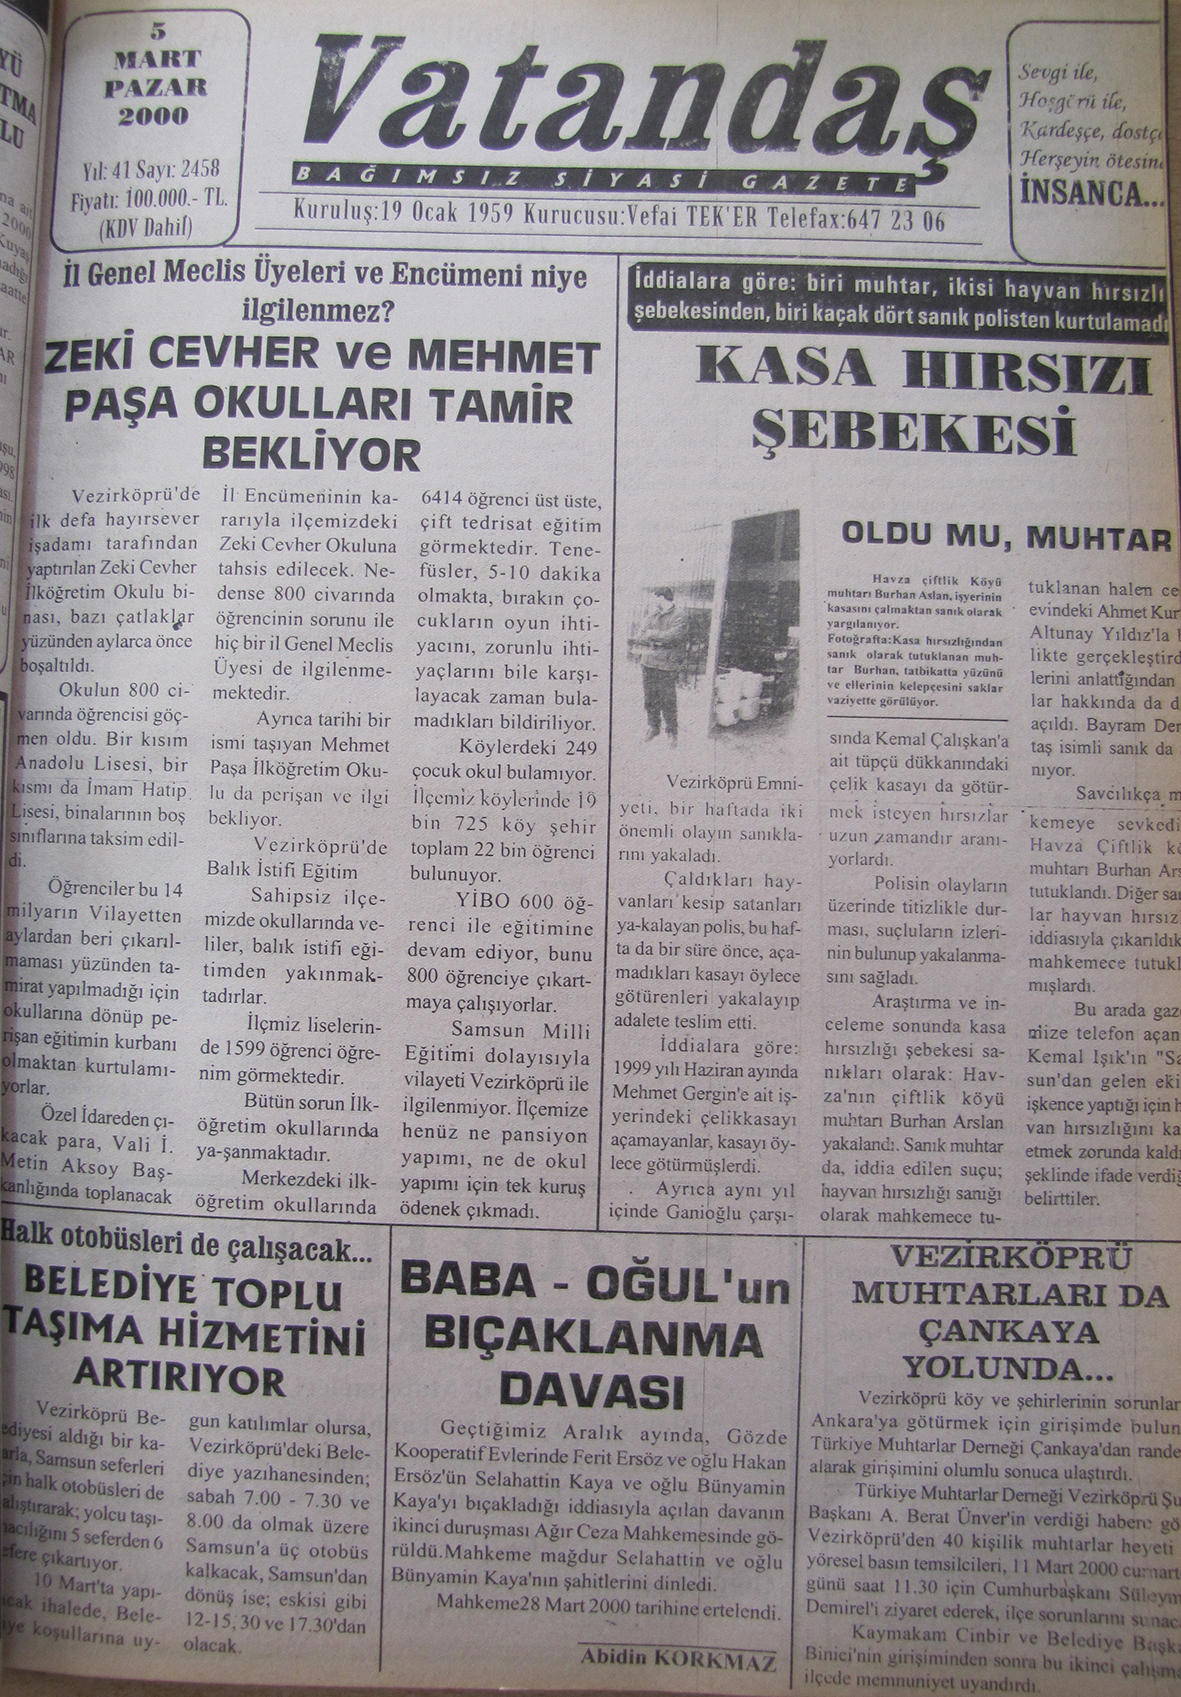 İl Genel Meclis Üyeleri ve encümeni niye ilgilenmez Zeki Cevher ve Mehmet Paşa Okulları Tamir Bekliyor 5 Mart 2000  Pazar